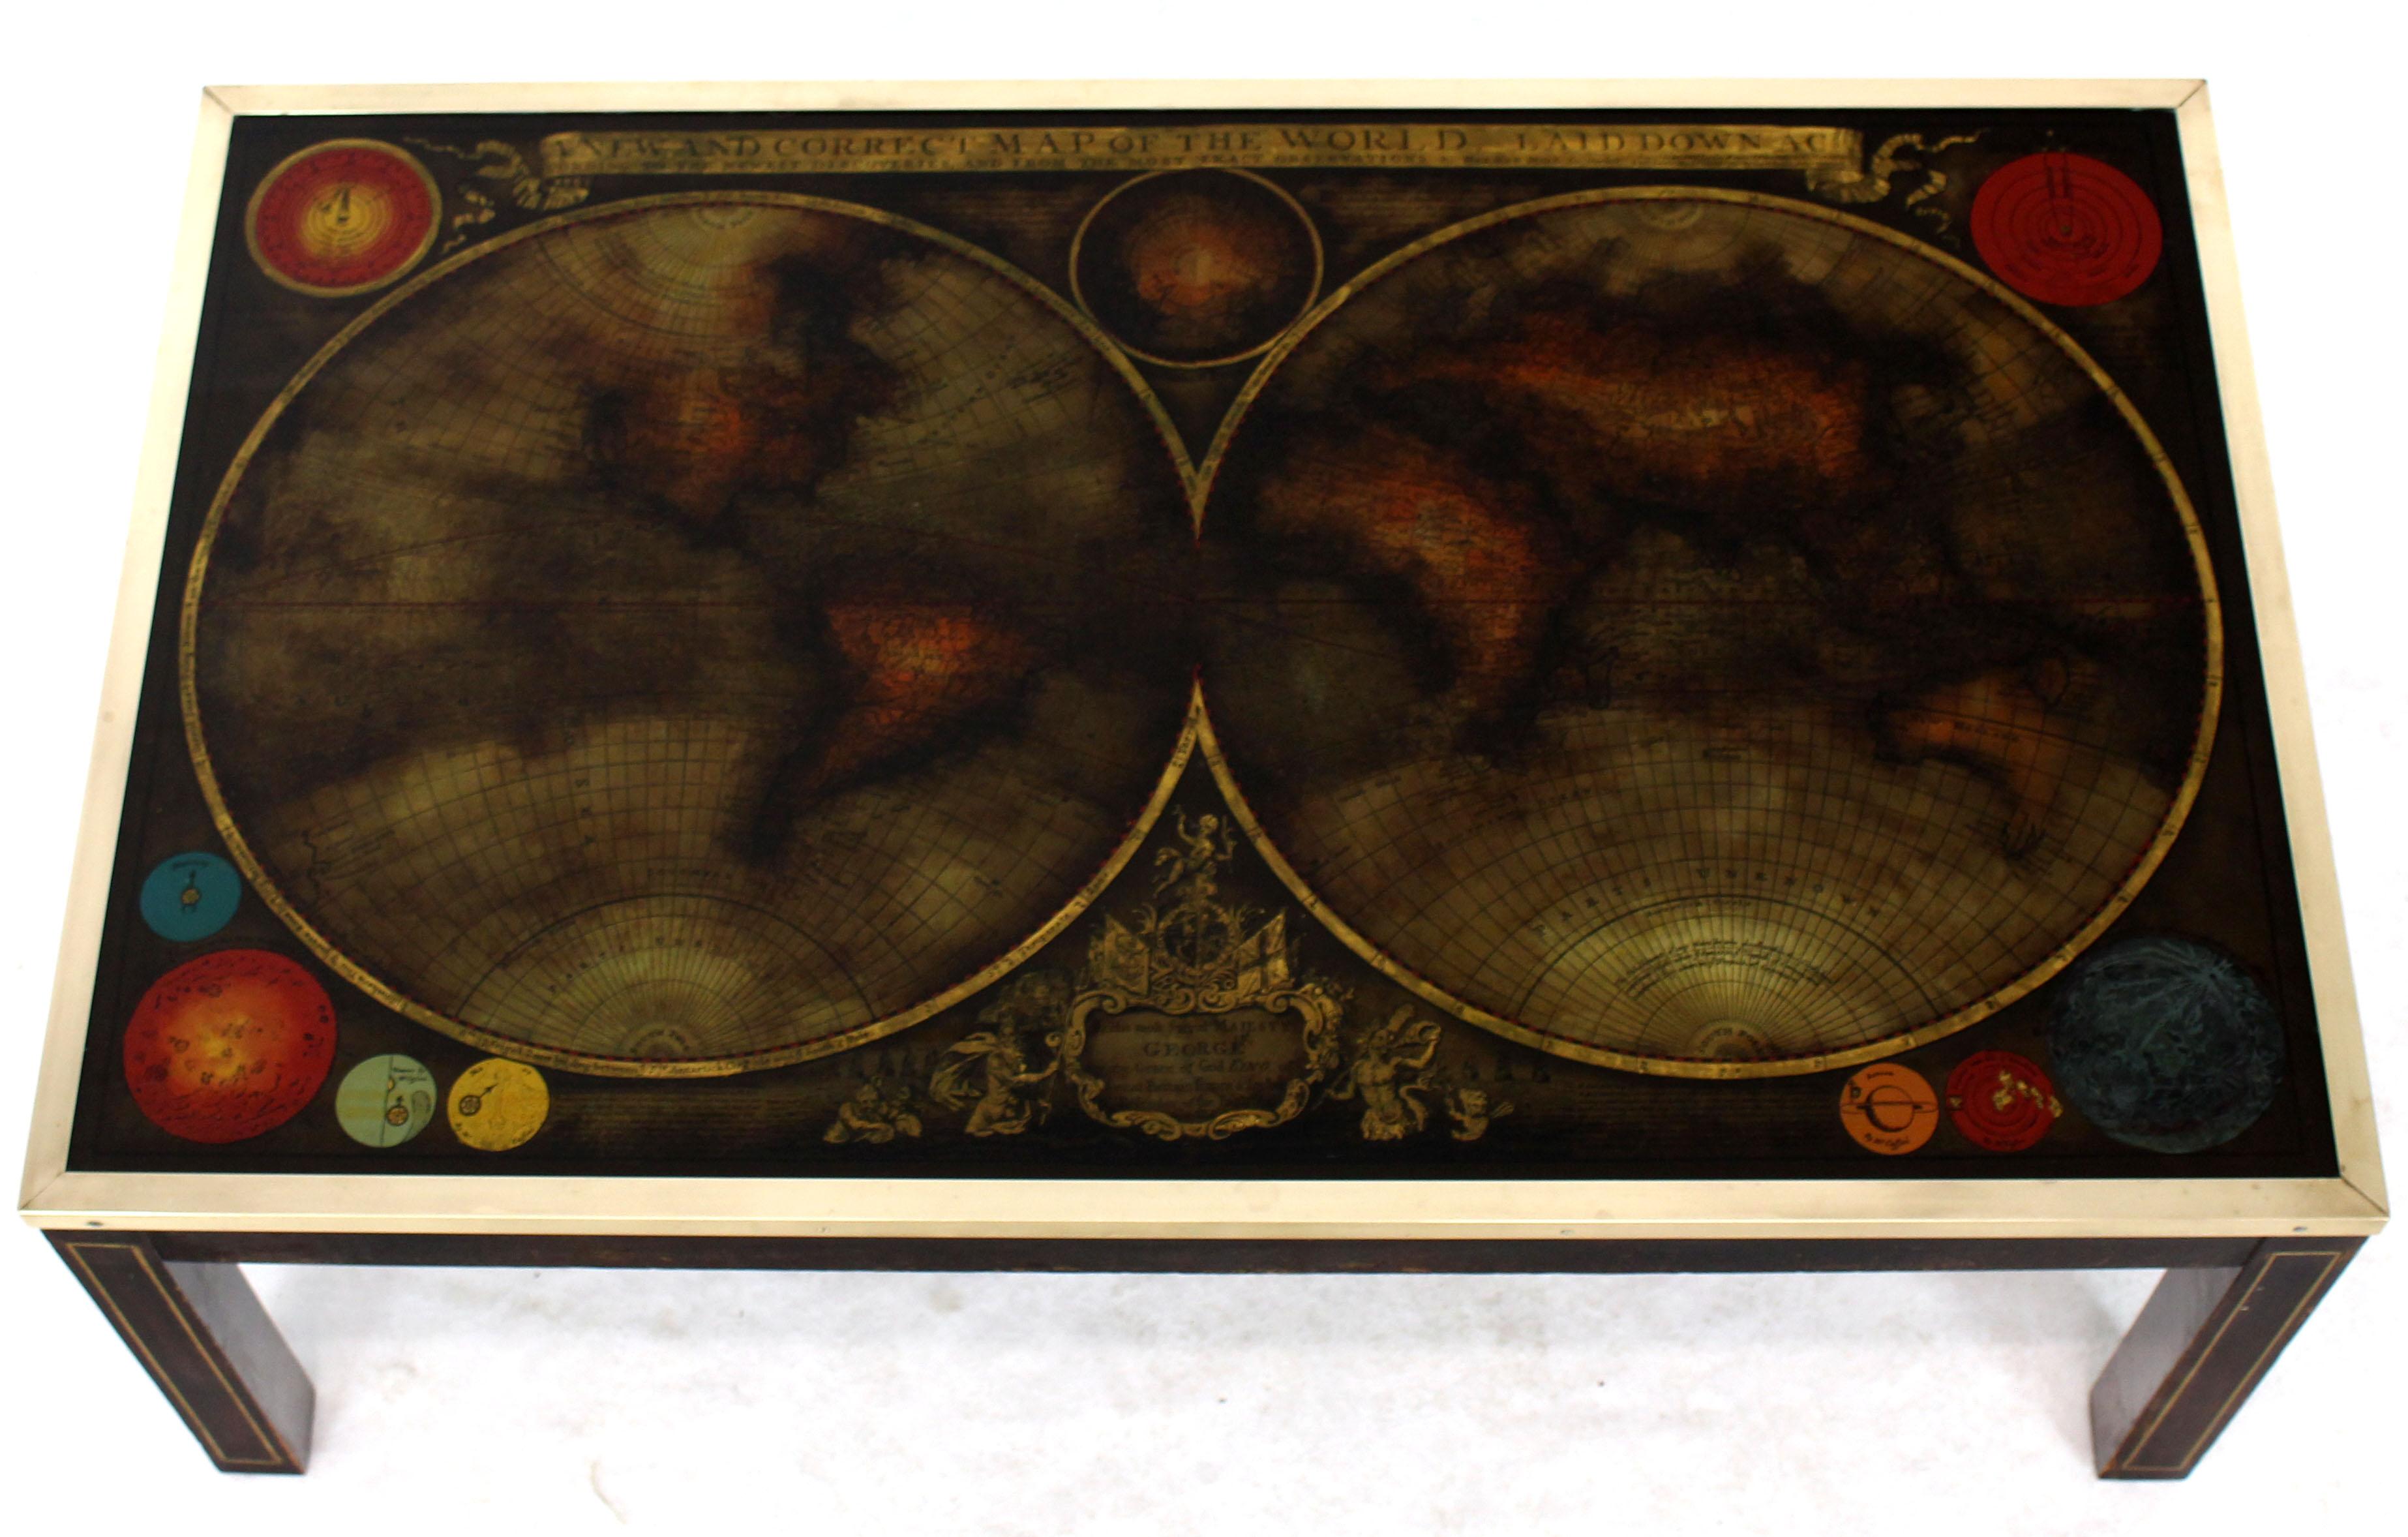 Table basse à plateau en verre en forme de carte d'atlas peinte à l'envers, de style moderne du milieu du siècle. Pieds incrustés de laiton. Le plateau en verre est fixé par un cadre en laiton. Les pieds sont fixés par des écrous à ailettes.